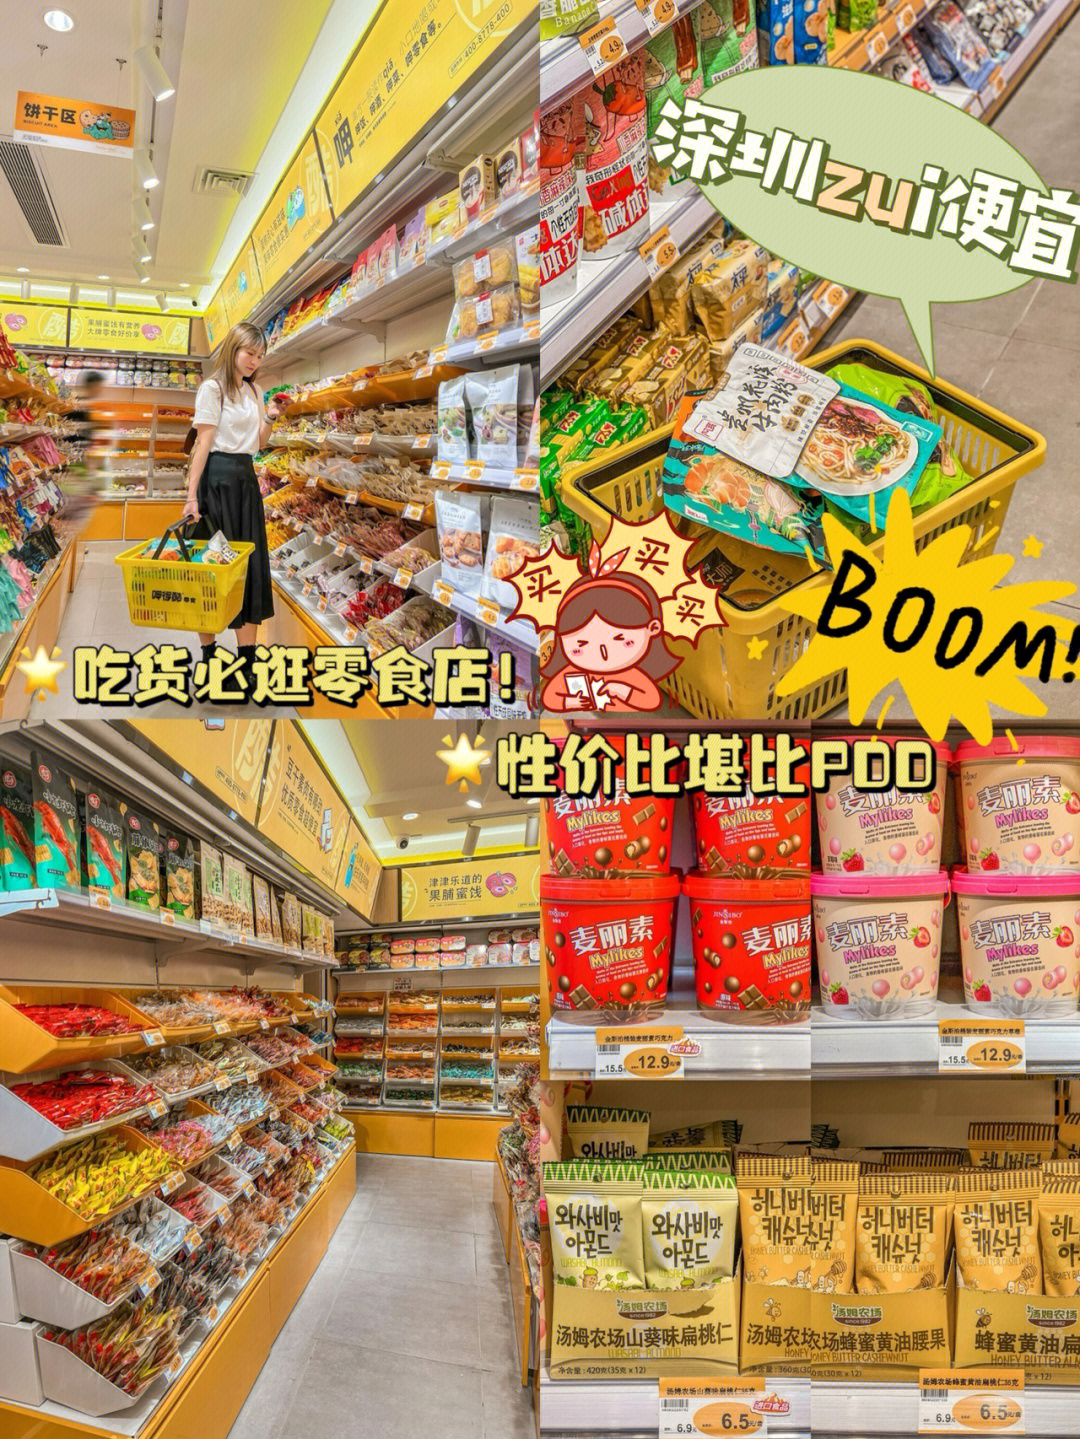 深圳零食超市批发价75二十几块扫走满满一袋